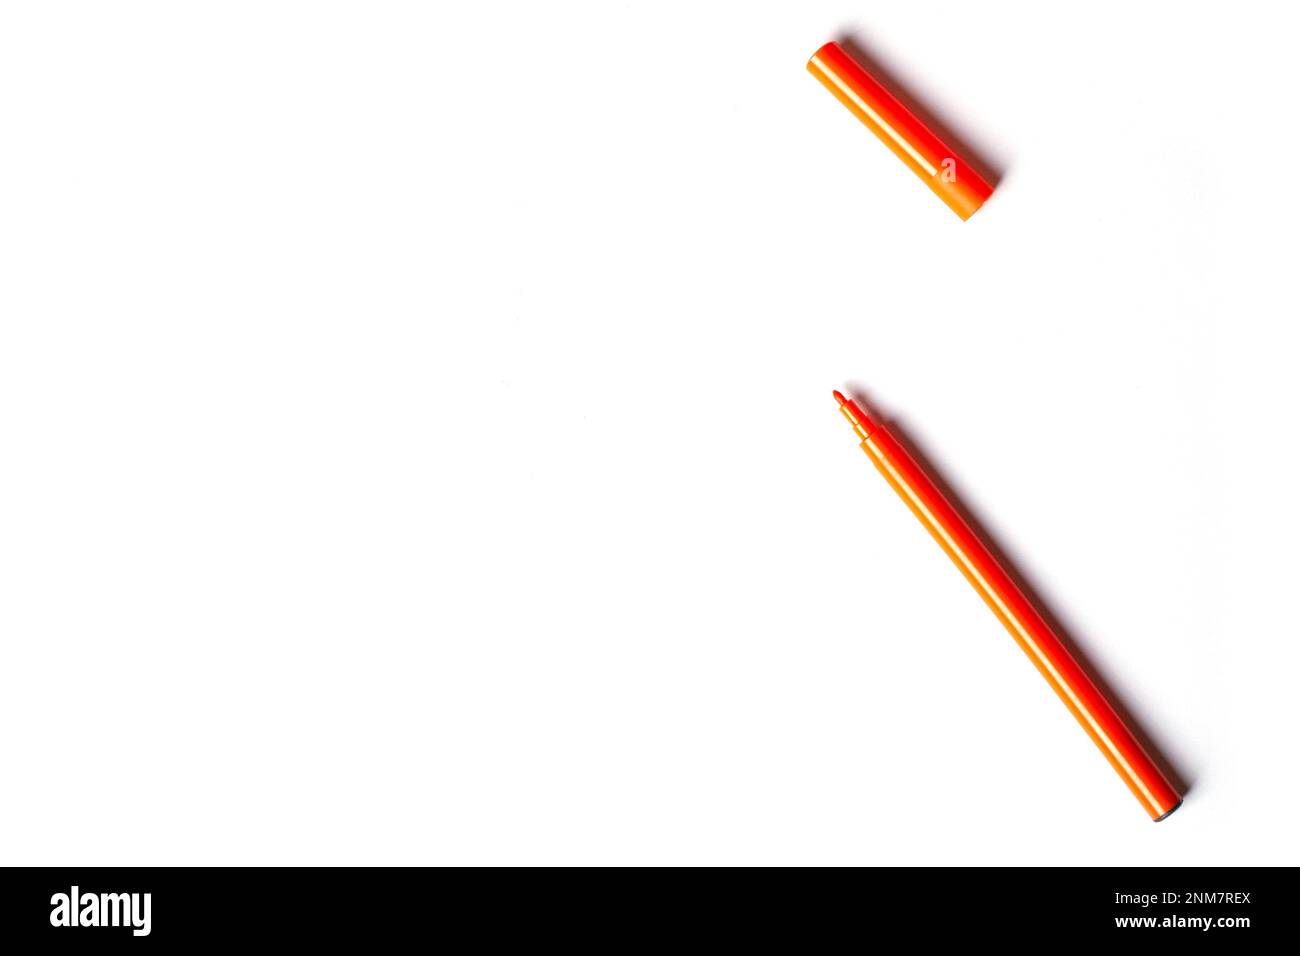 Una penna arancione con punta in feltro e cappuccio si trova su uno sfondo bianco. spazio vuoto per la scrittura Foto Stock